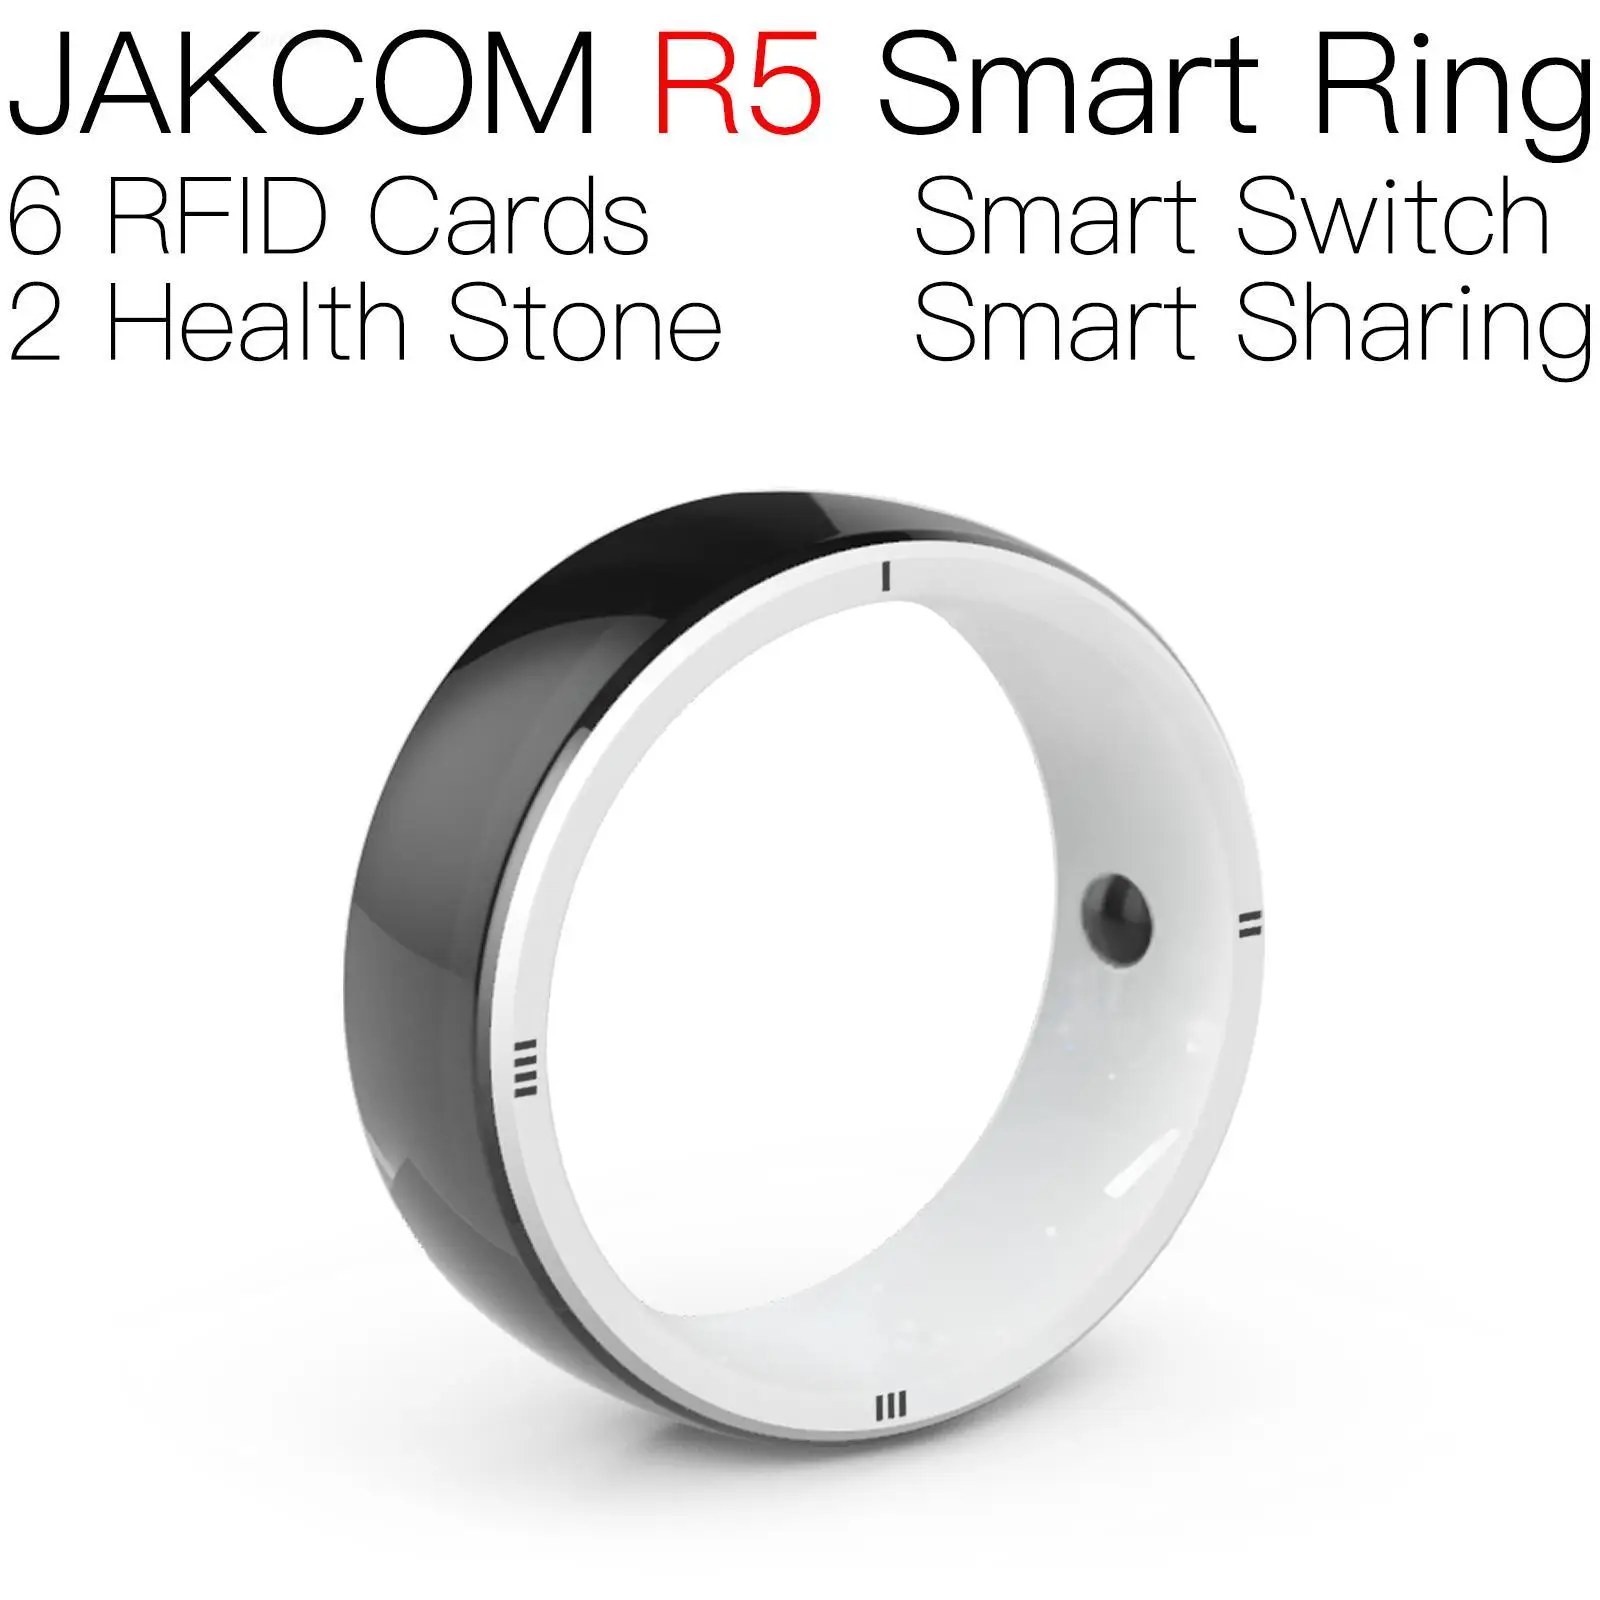 

JAKCOM R5 Smart Ring Super value as anti metal sticker carte rfid125khz key copy nfc tag check patrol yelan rfid tags 125khz